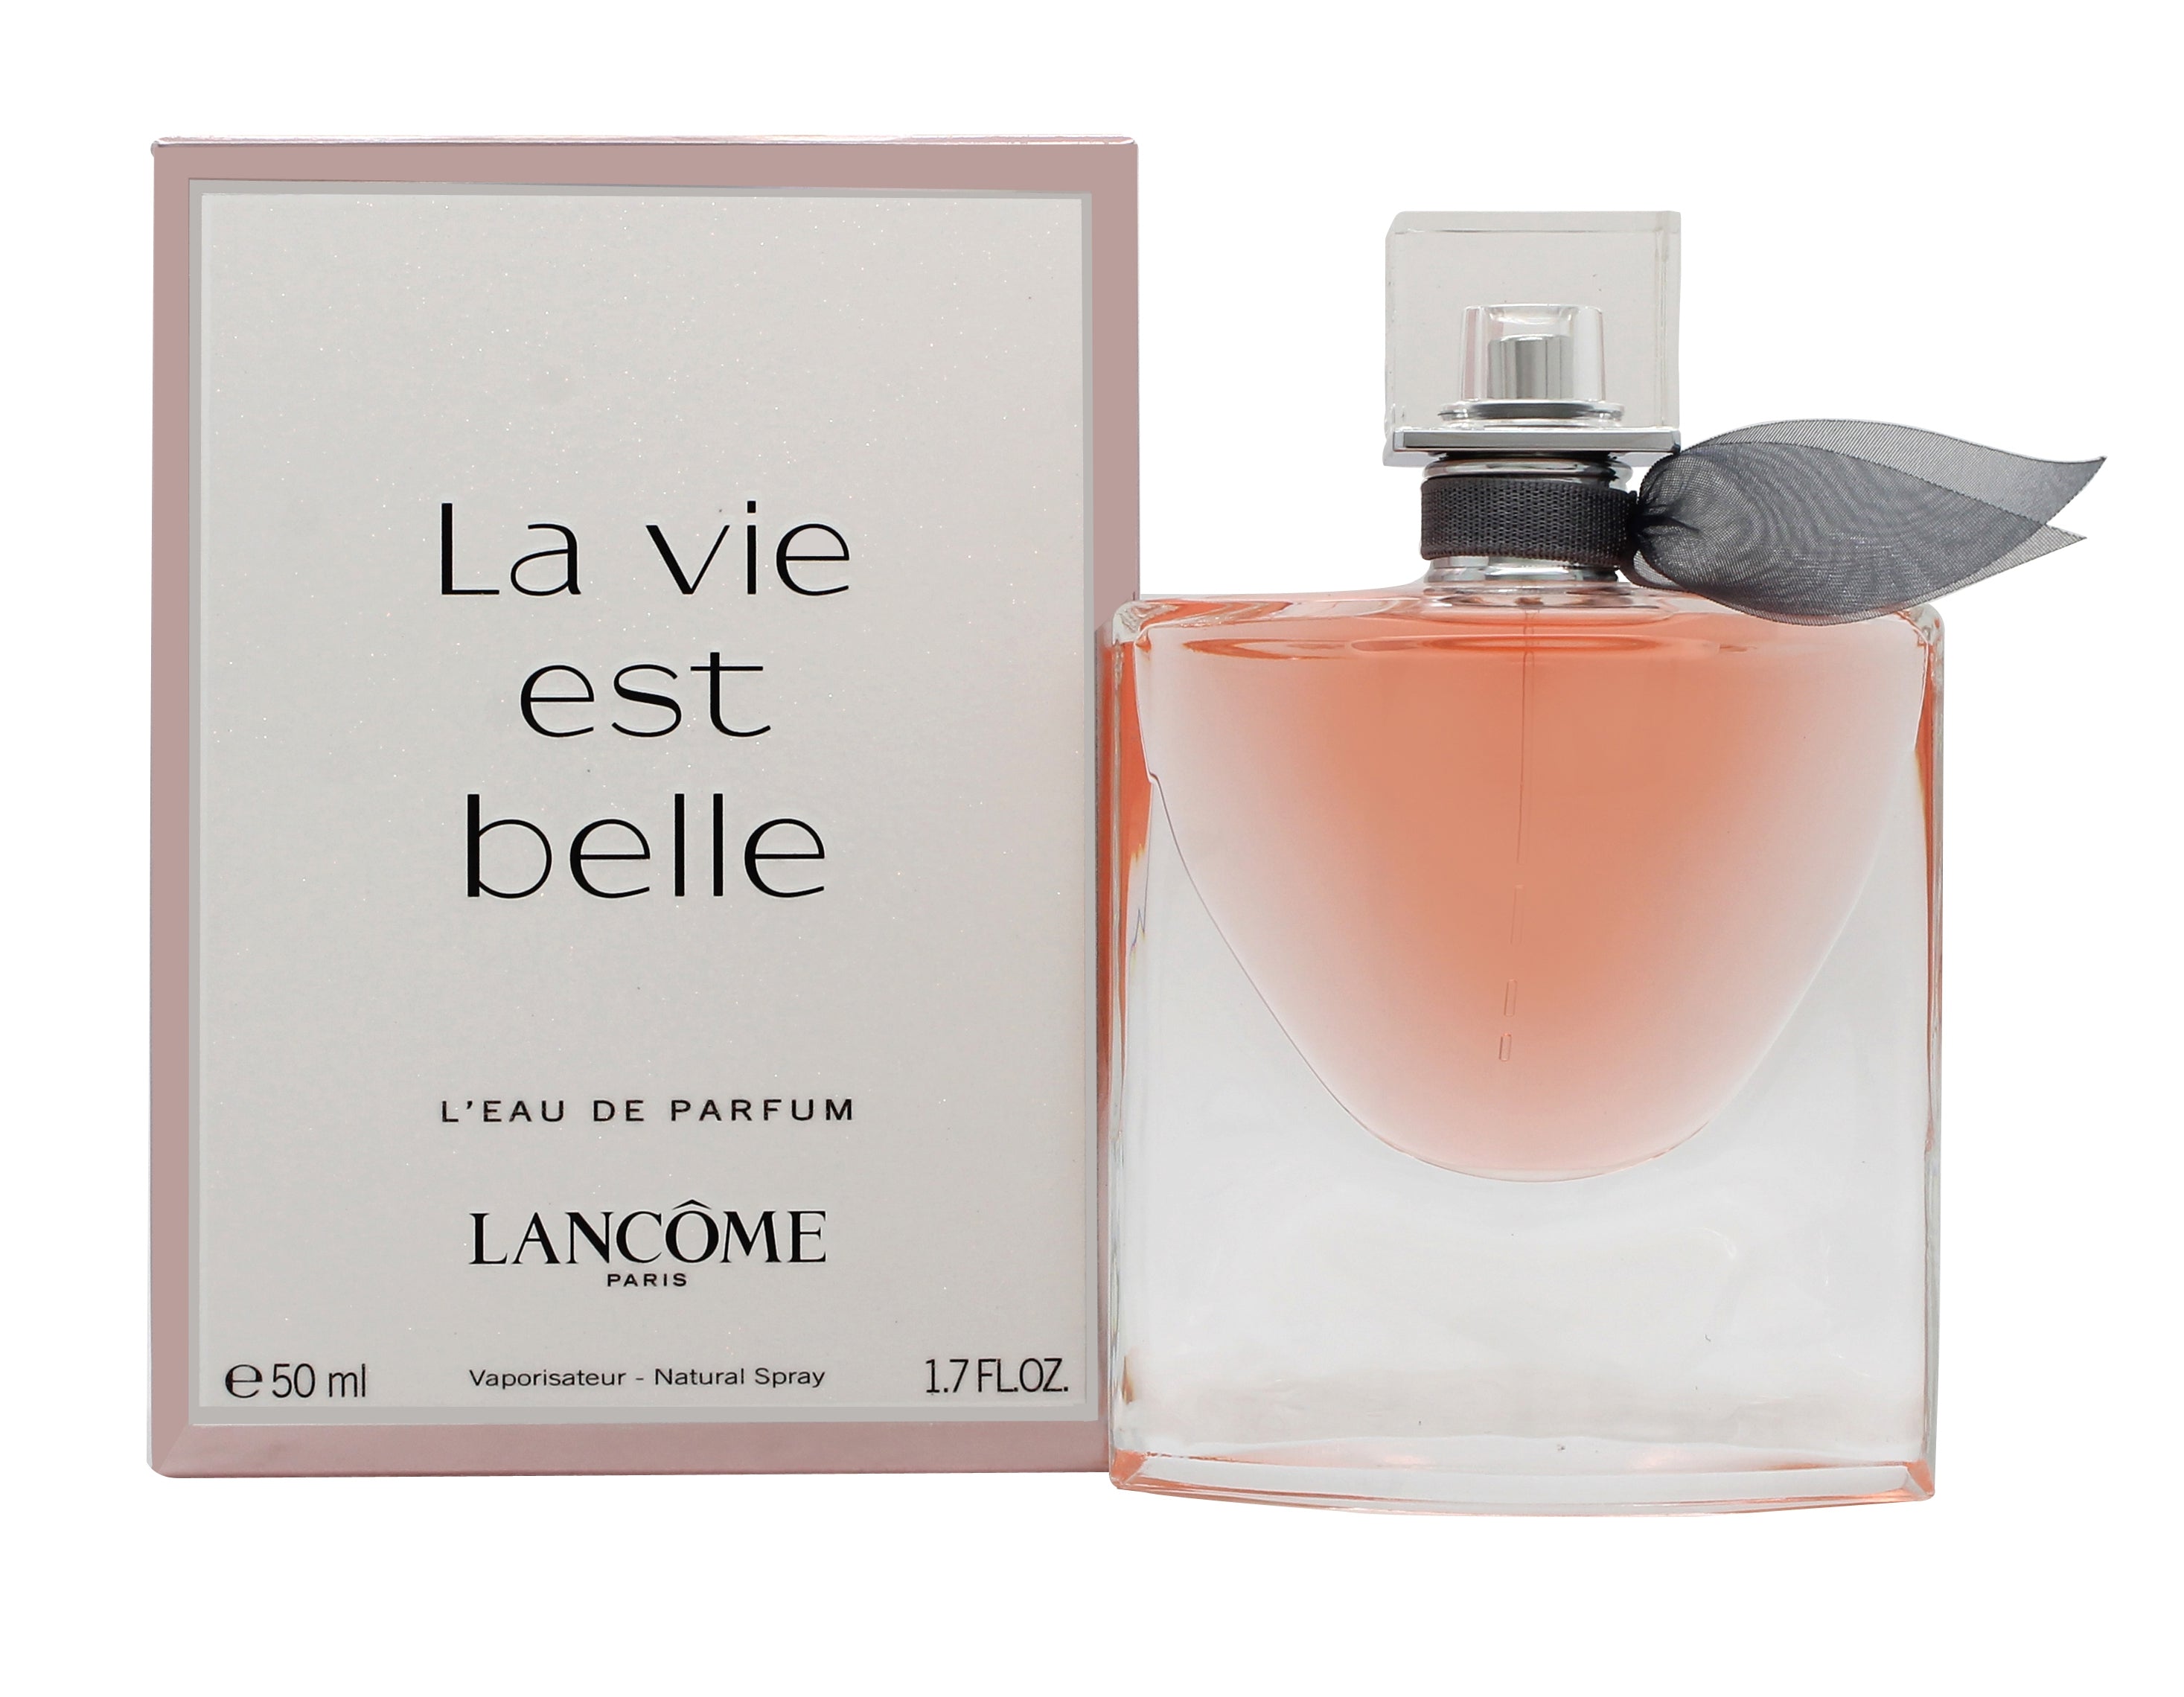 View Lancome La Vie Est Belle Eau de Parfum 50ml Spray information